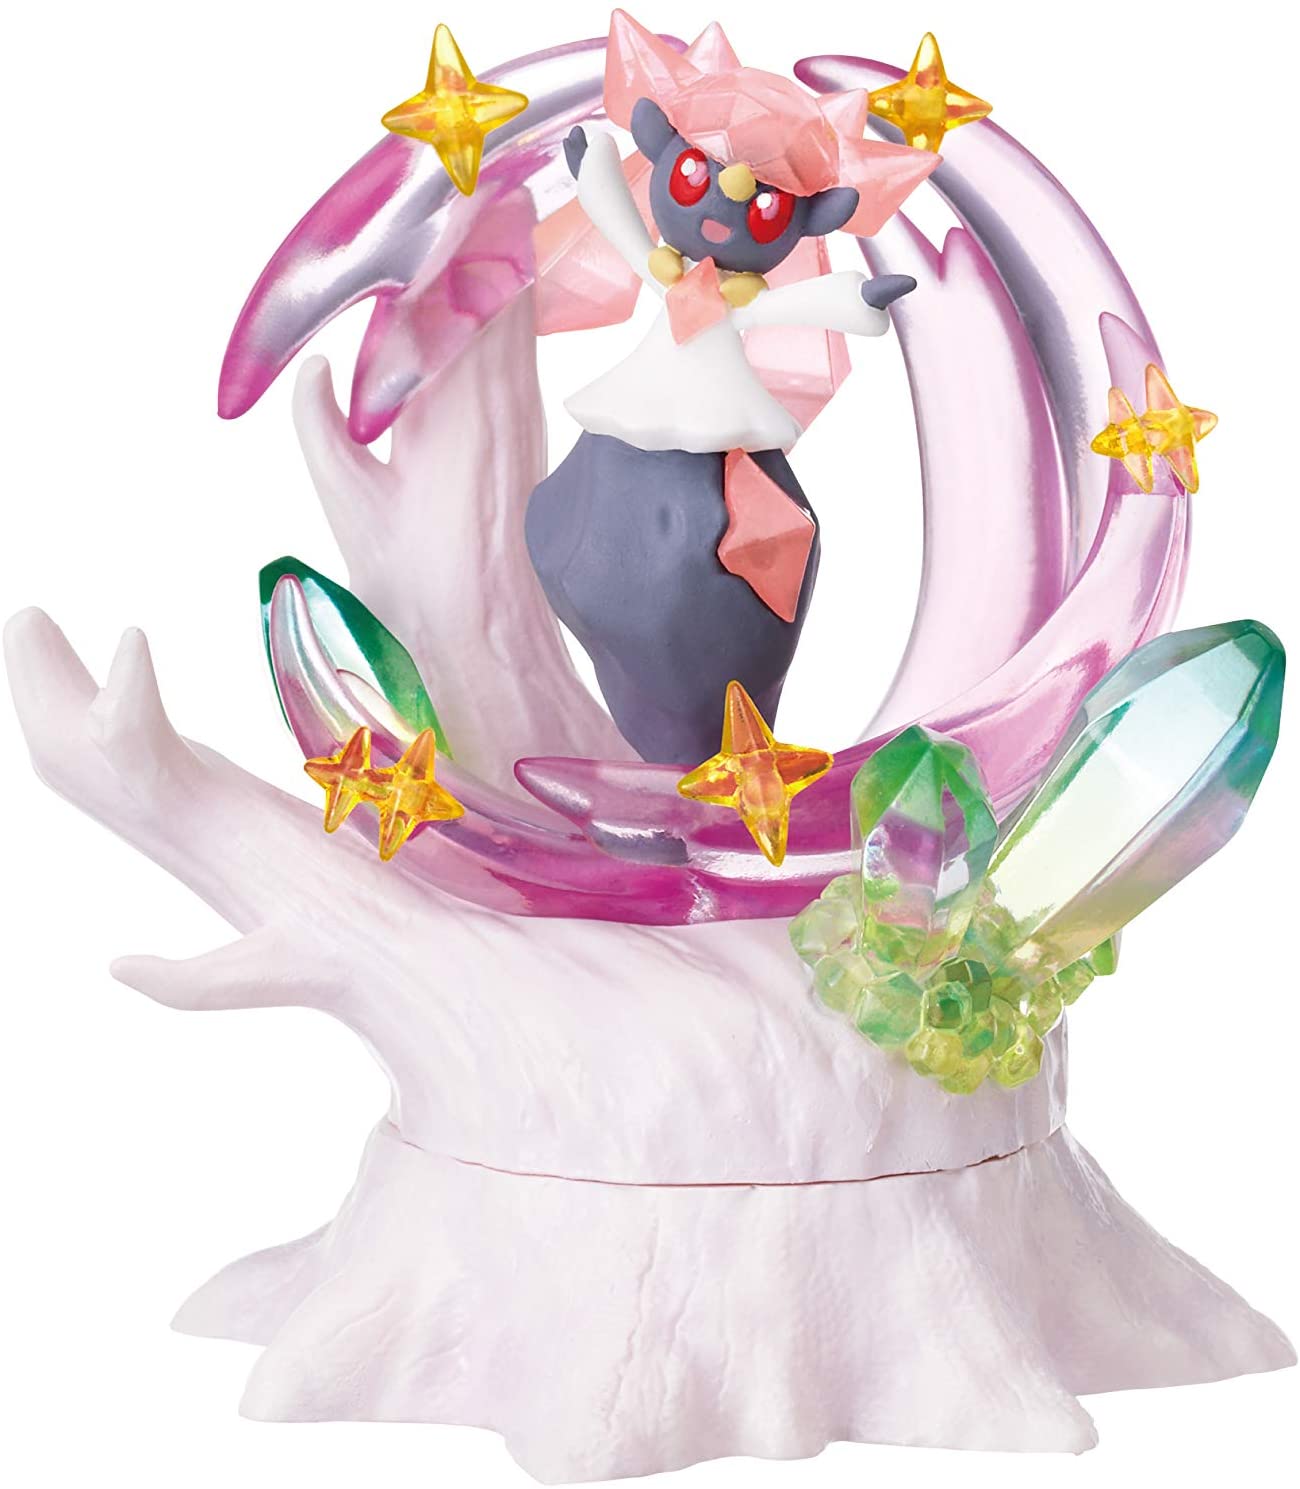 Pokémon Figure Forest 6 Candy Toy